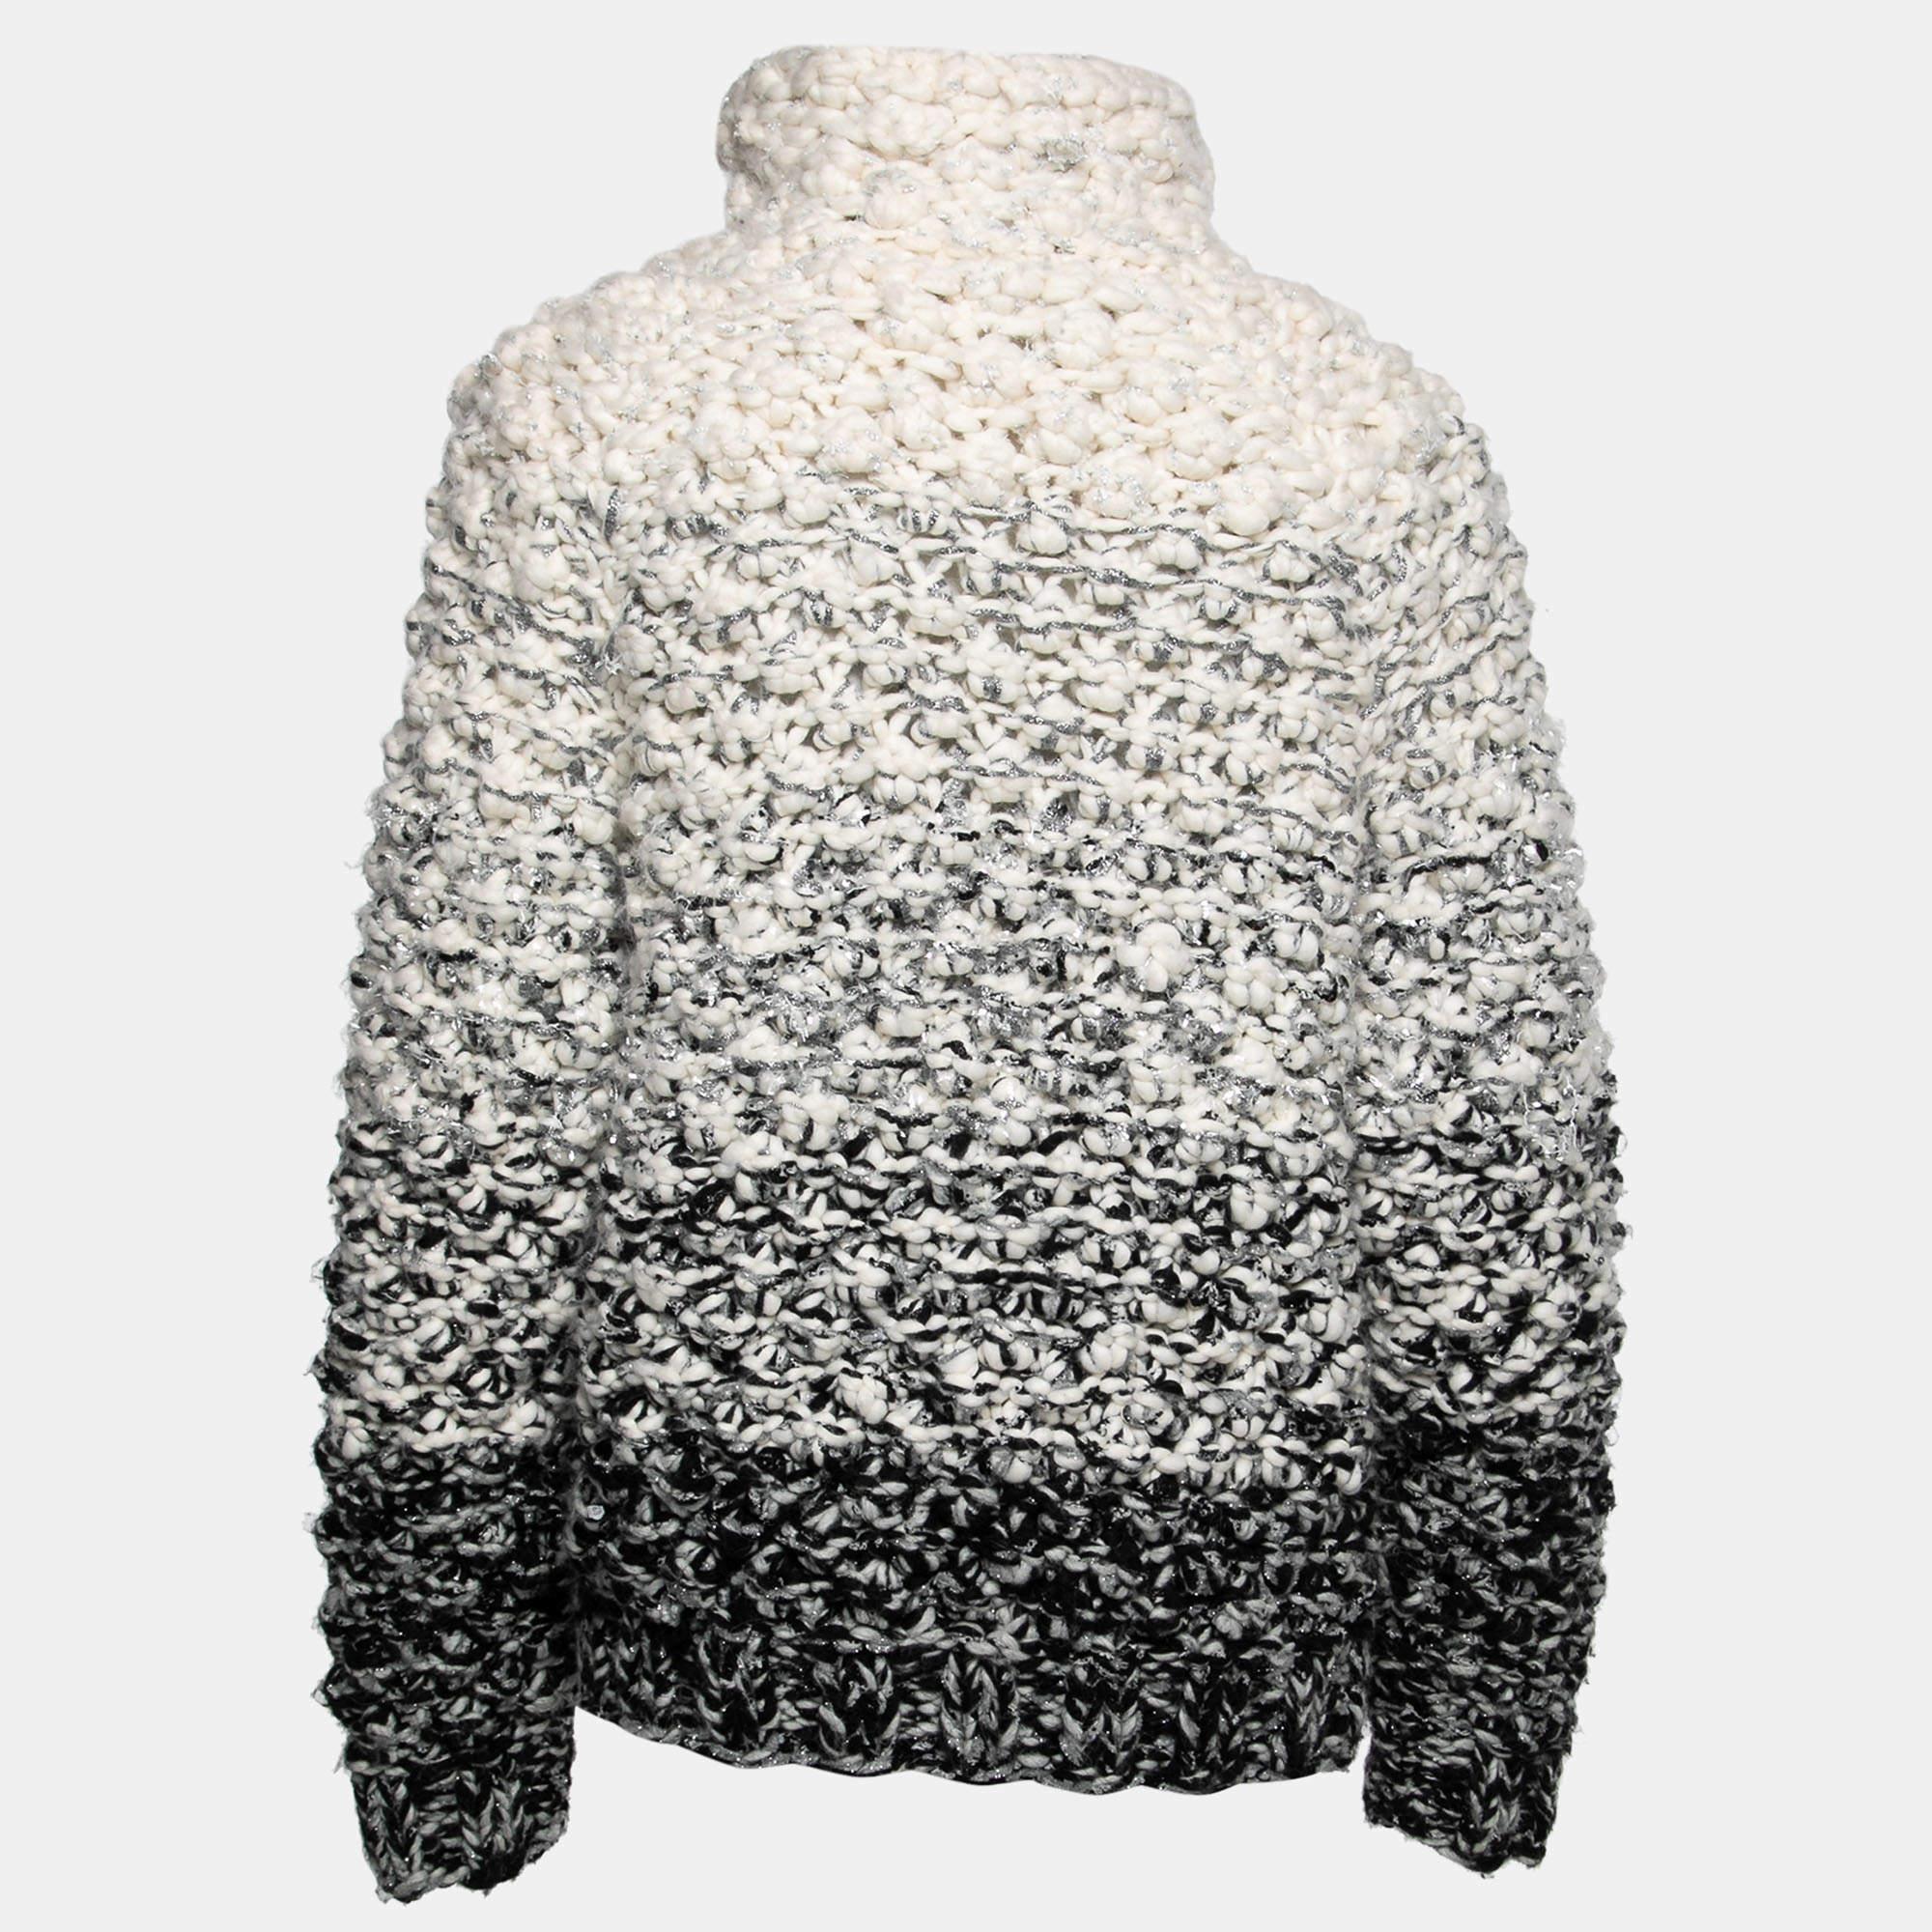 Genießen Sie Ihre Winterausflüge bequem und gemütlich in diesem Pullover. Dieser Pullover aus einer Wollmischung spendet reichlich Wärme und wertet jeden Winterlook mühelos auf.

